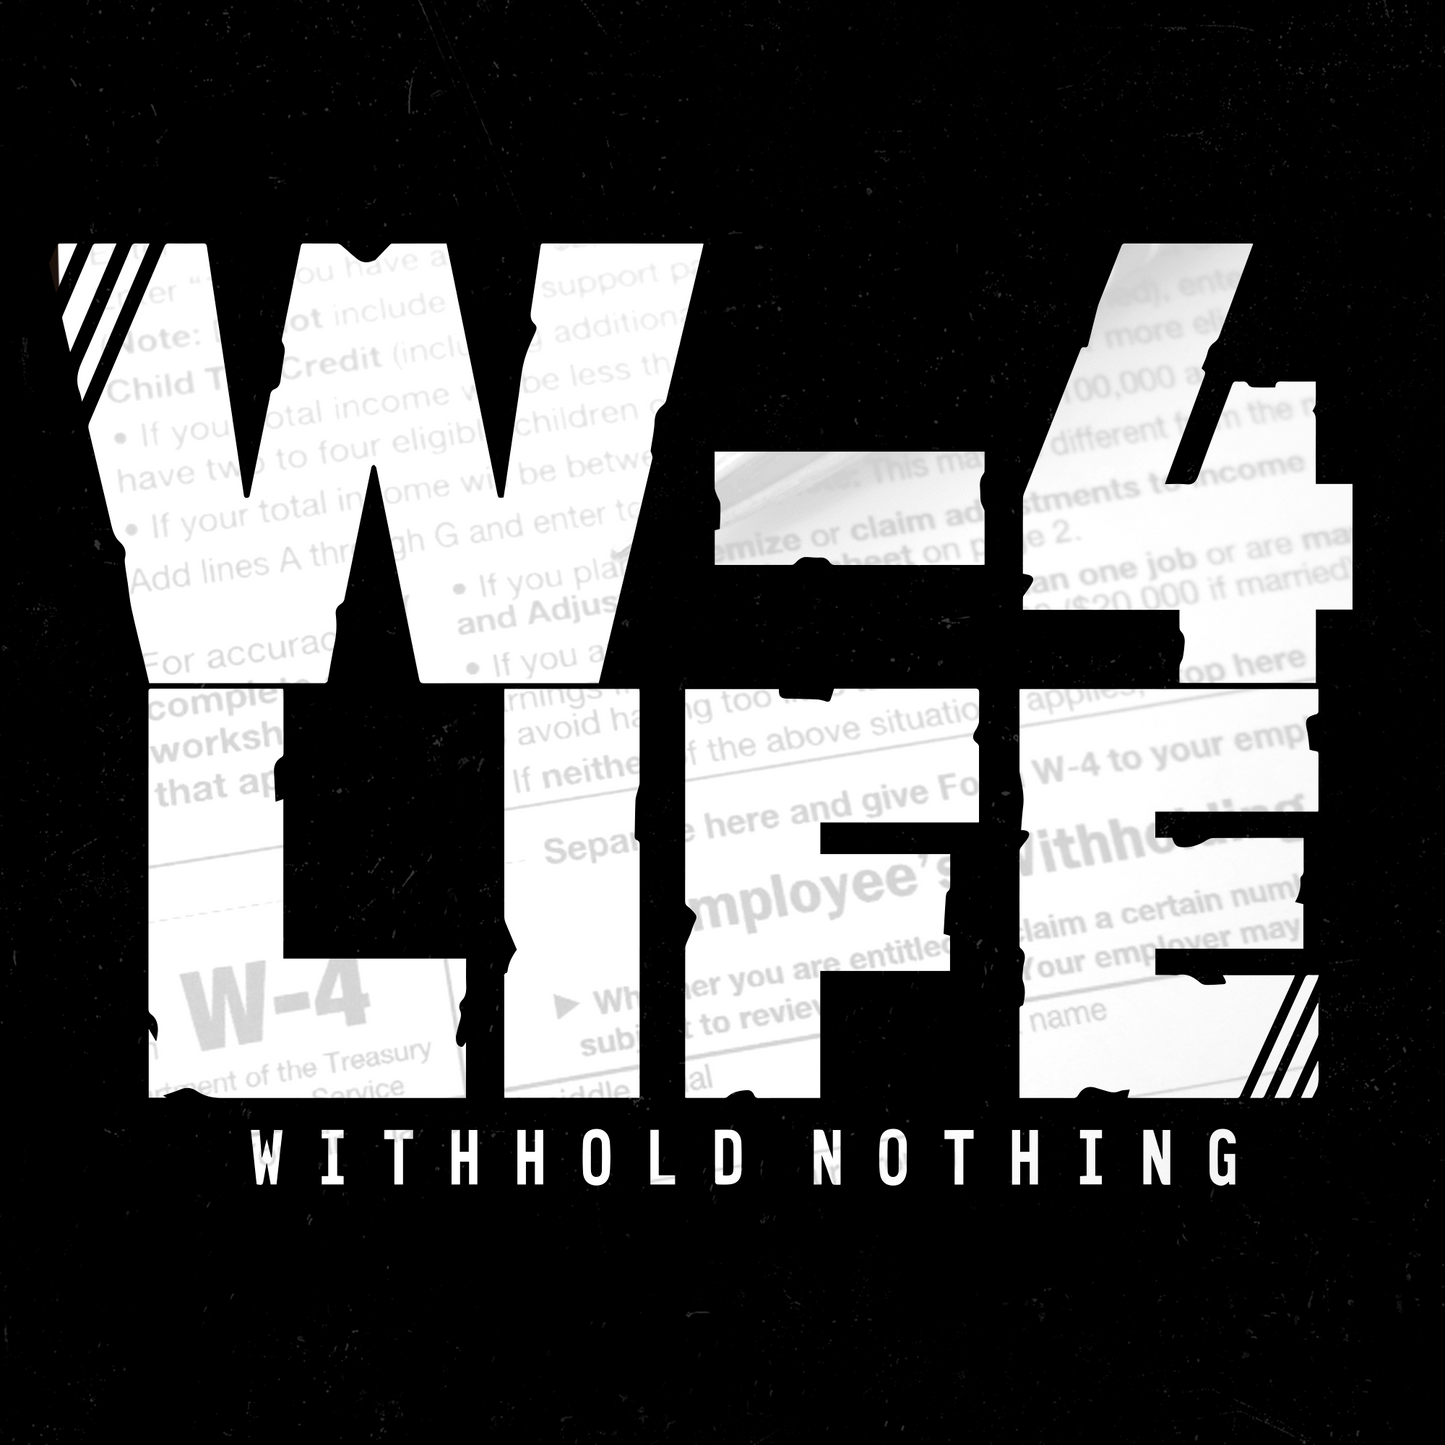 W-4 Life - Withhold Nothing / Black Short Sleeve TShirt